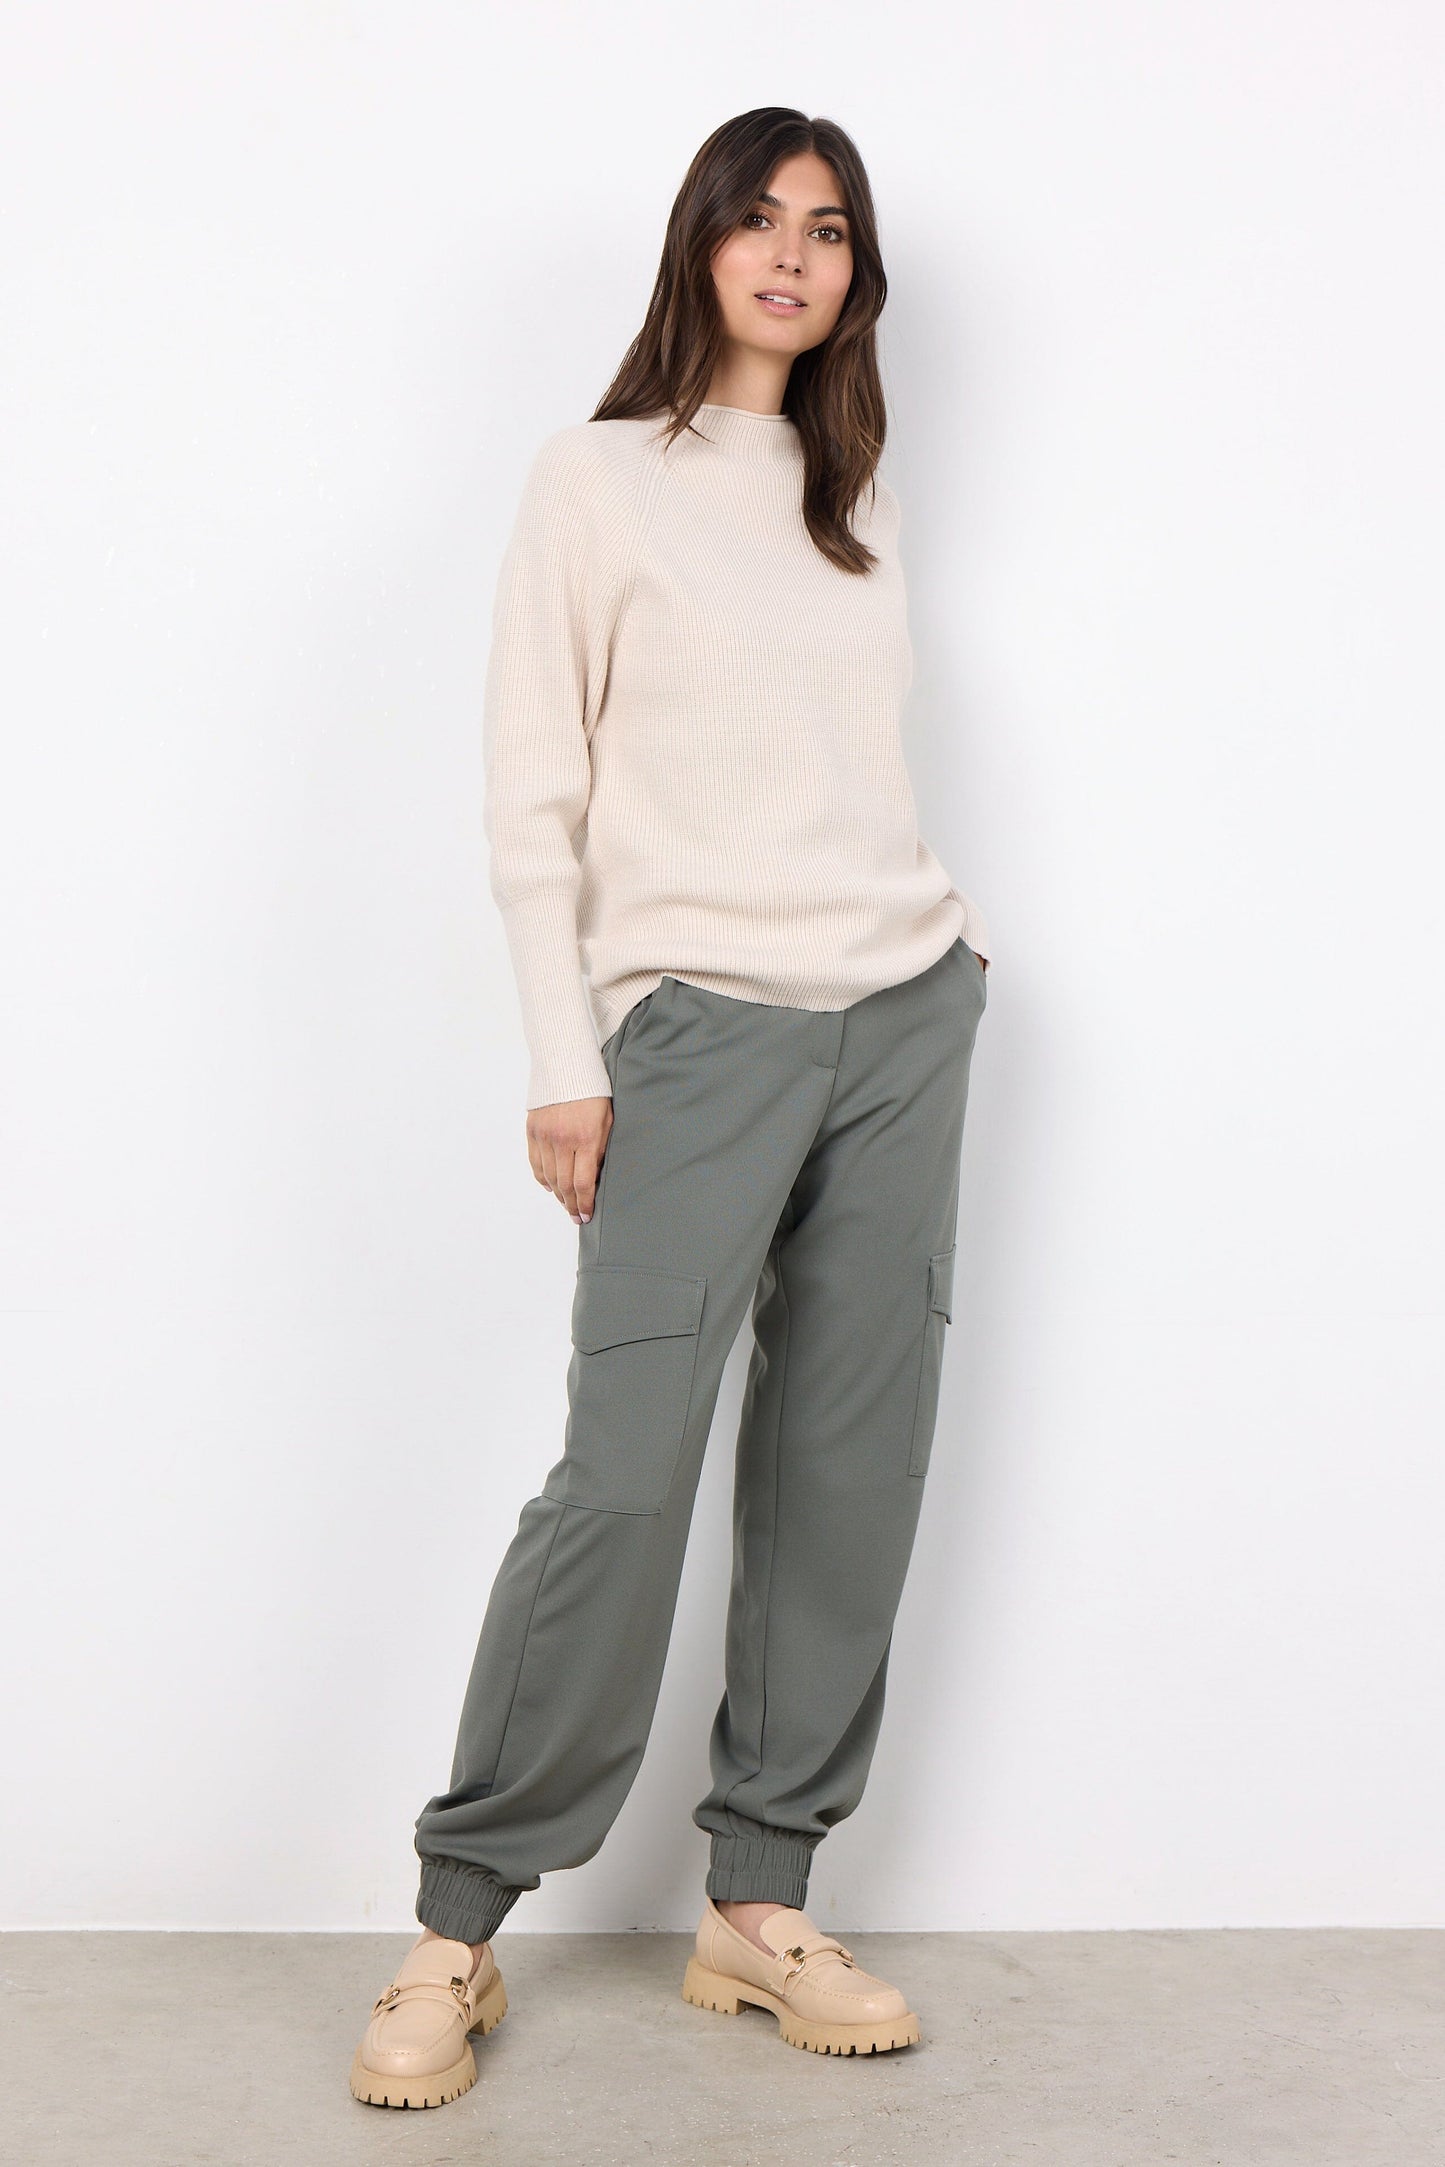 Kanita Pullover | Cream Melange Knitwear Soya Concept 